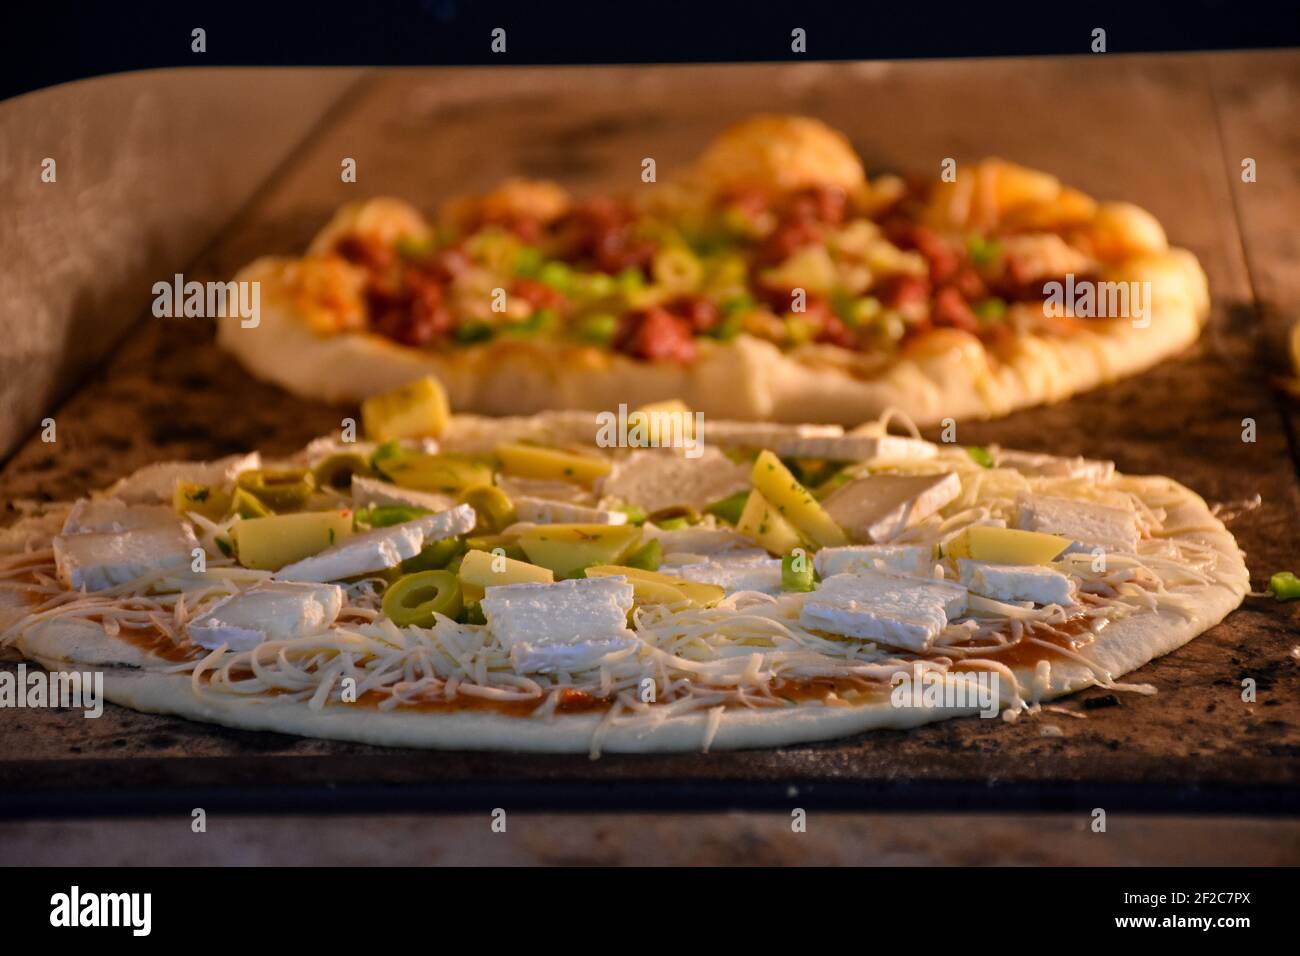 Cucina italiana pizza in forno moderno, concetto di piatti mediterranei Foto Stock